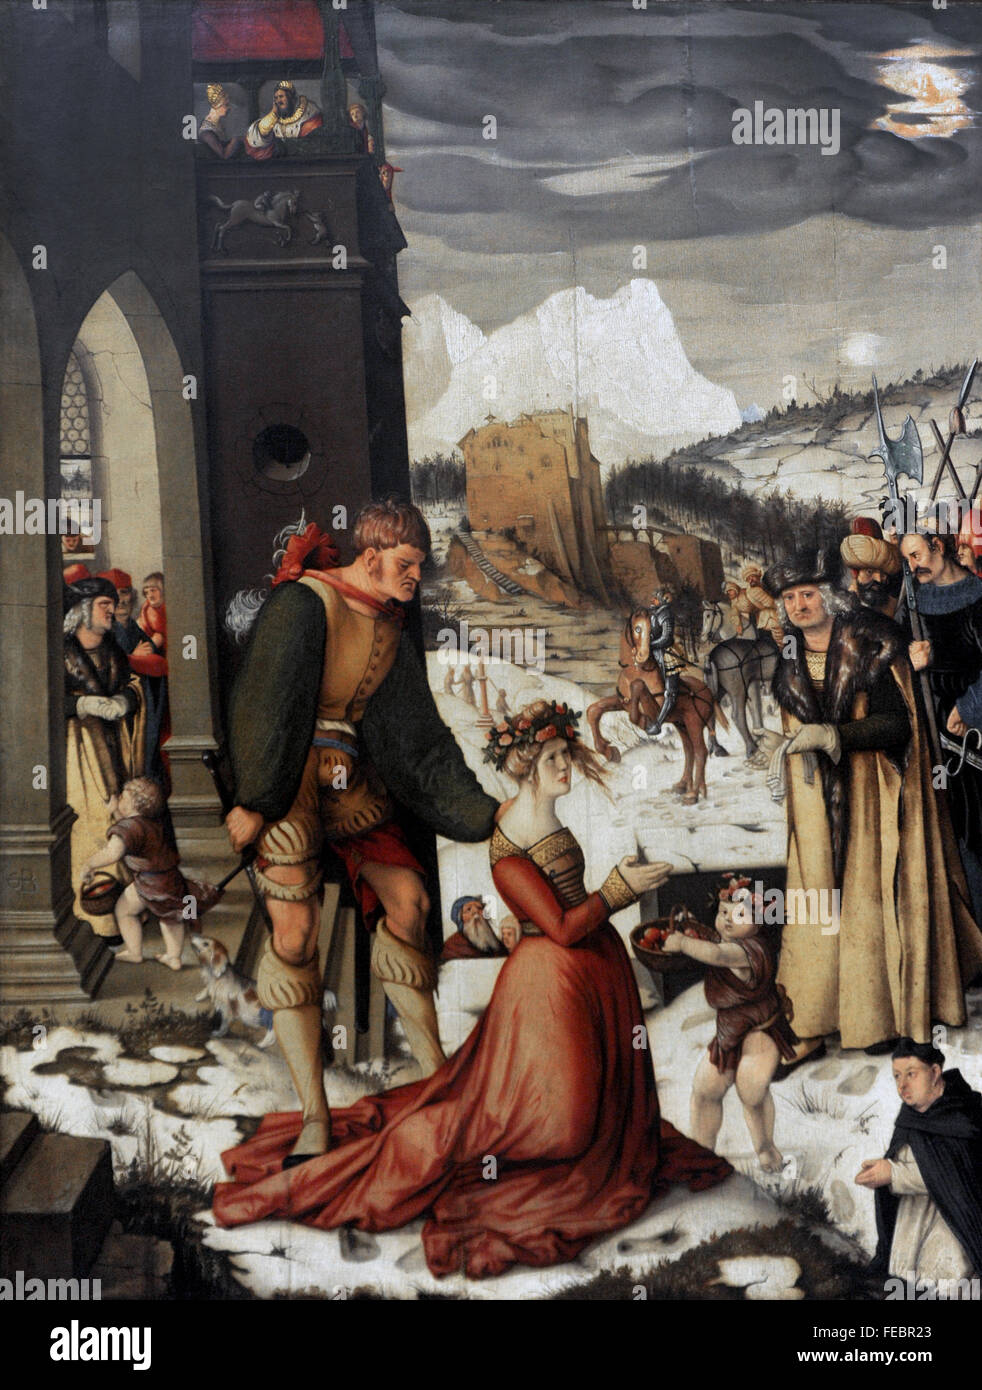 Hans Baldung (1484-1545). Deutscher Maler. Enthauptung von St. Dorothea, 1516. National Gallery. Prag. Tschechische Republik. Stockfoto